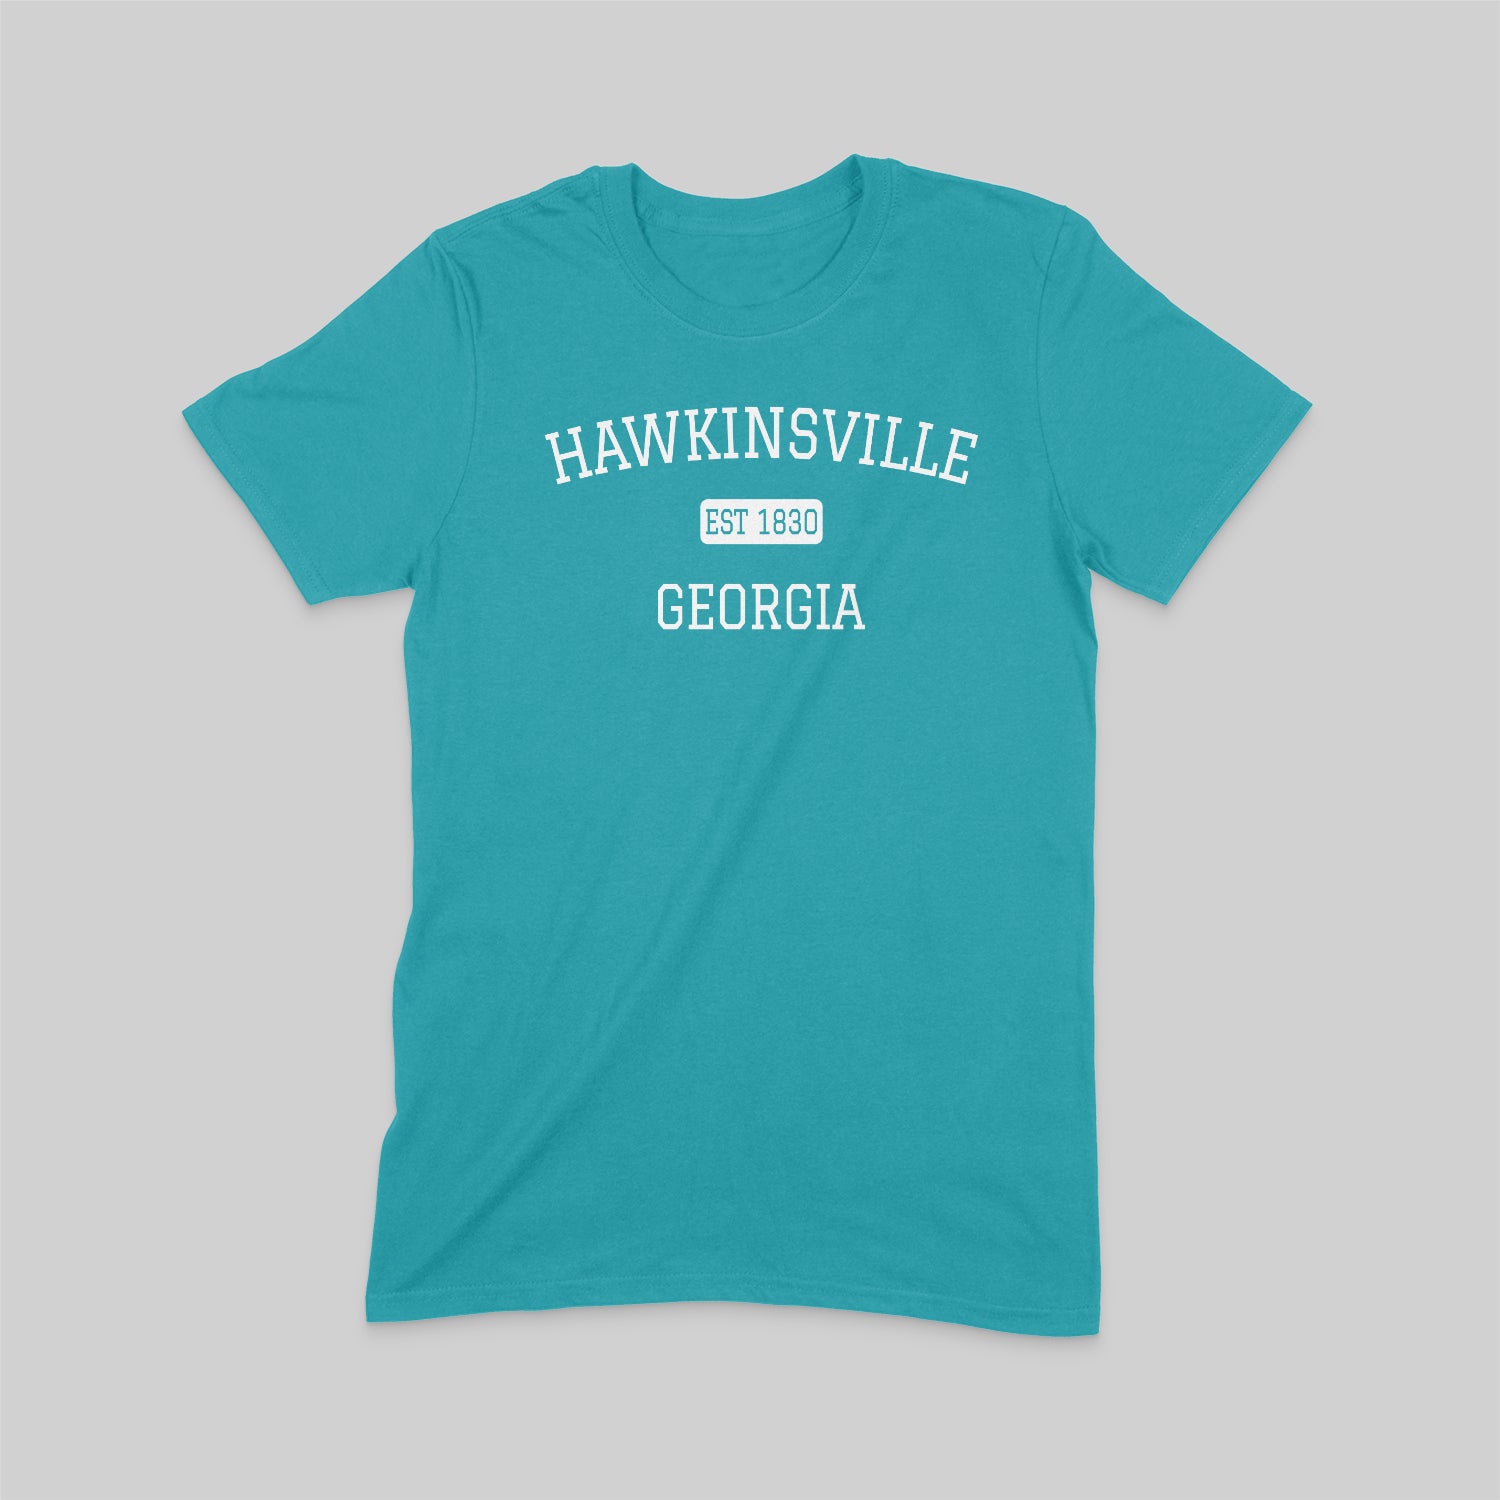 Historic Hawkinsville Tee